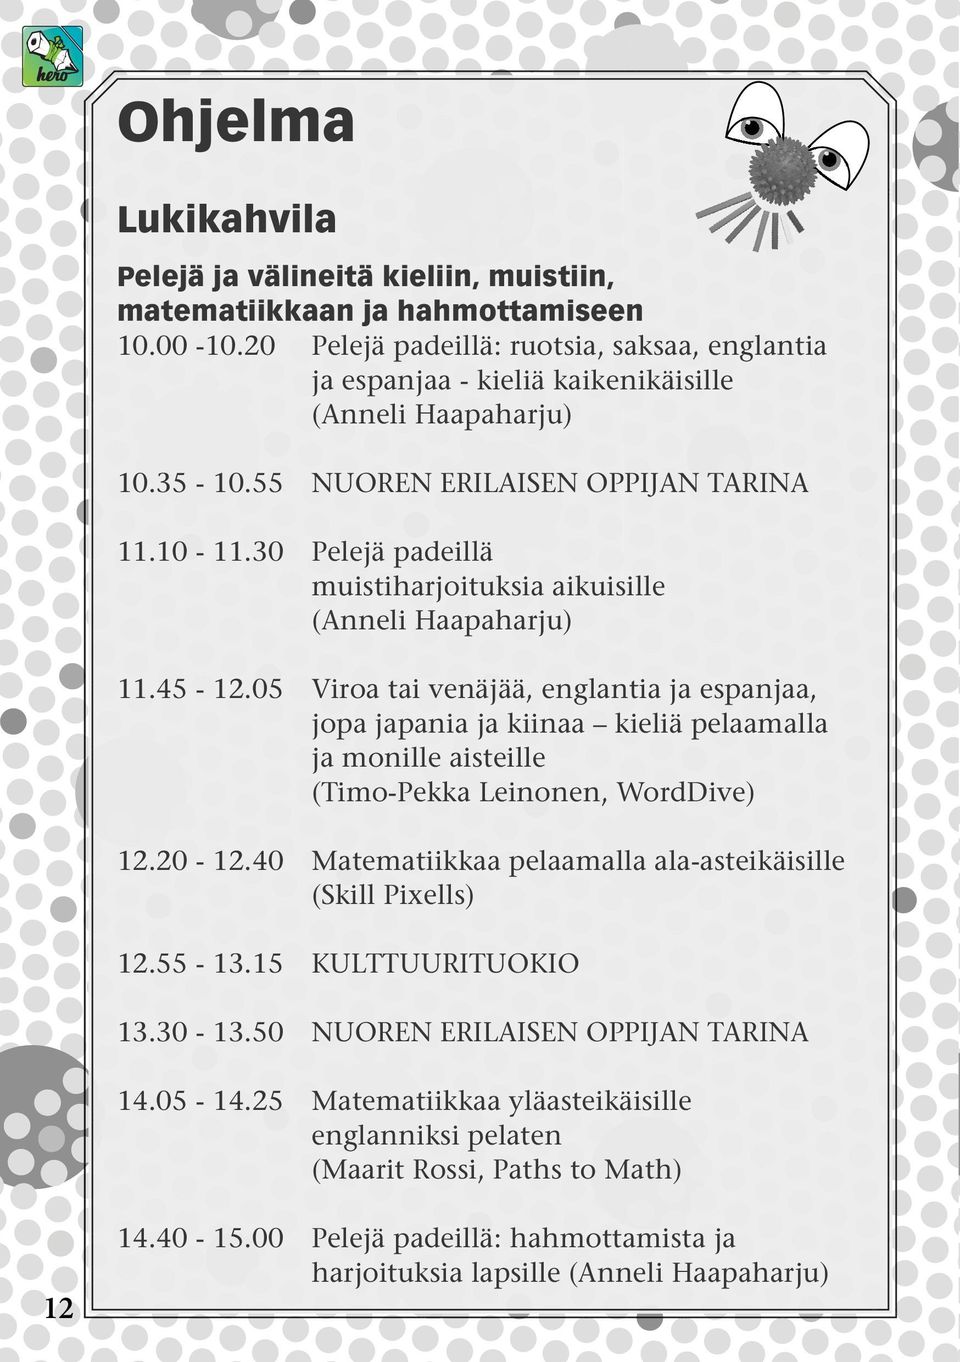 30 Pelejä padeillä muistiharjoituksia aikuisille (Anneli Haapaharju) 11.45-12.